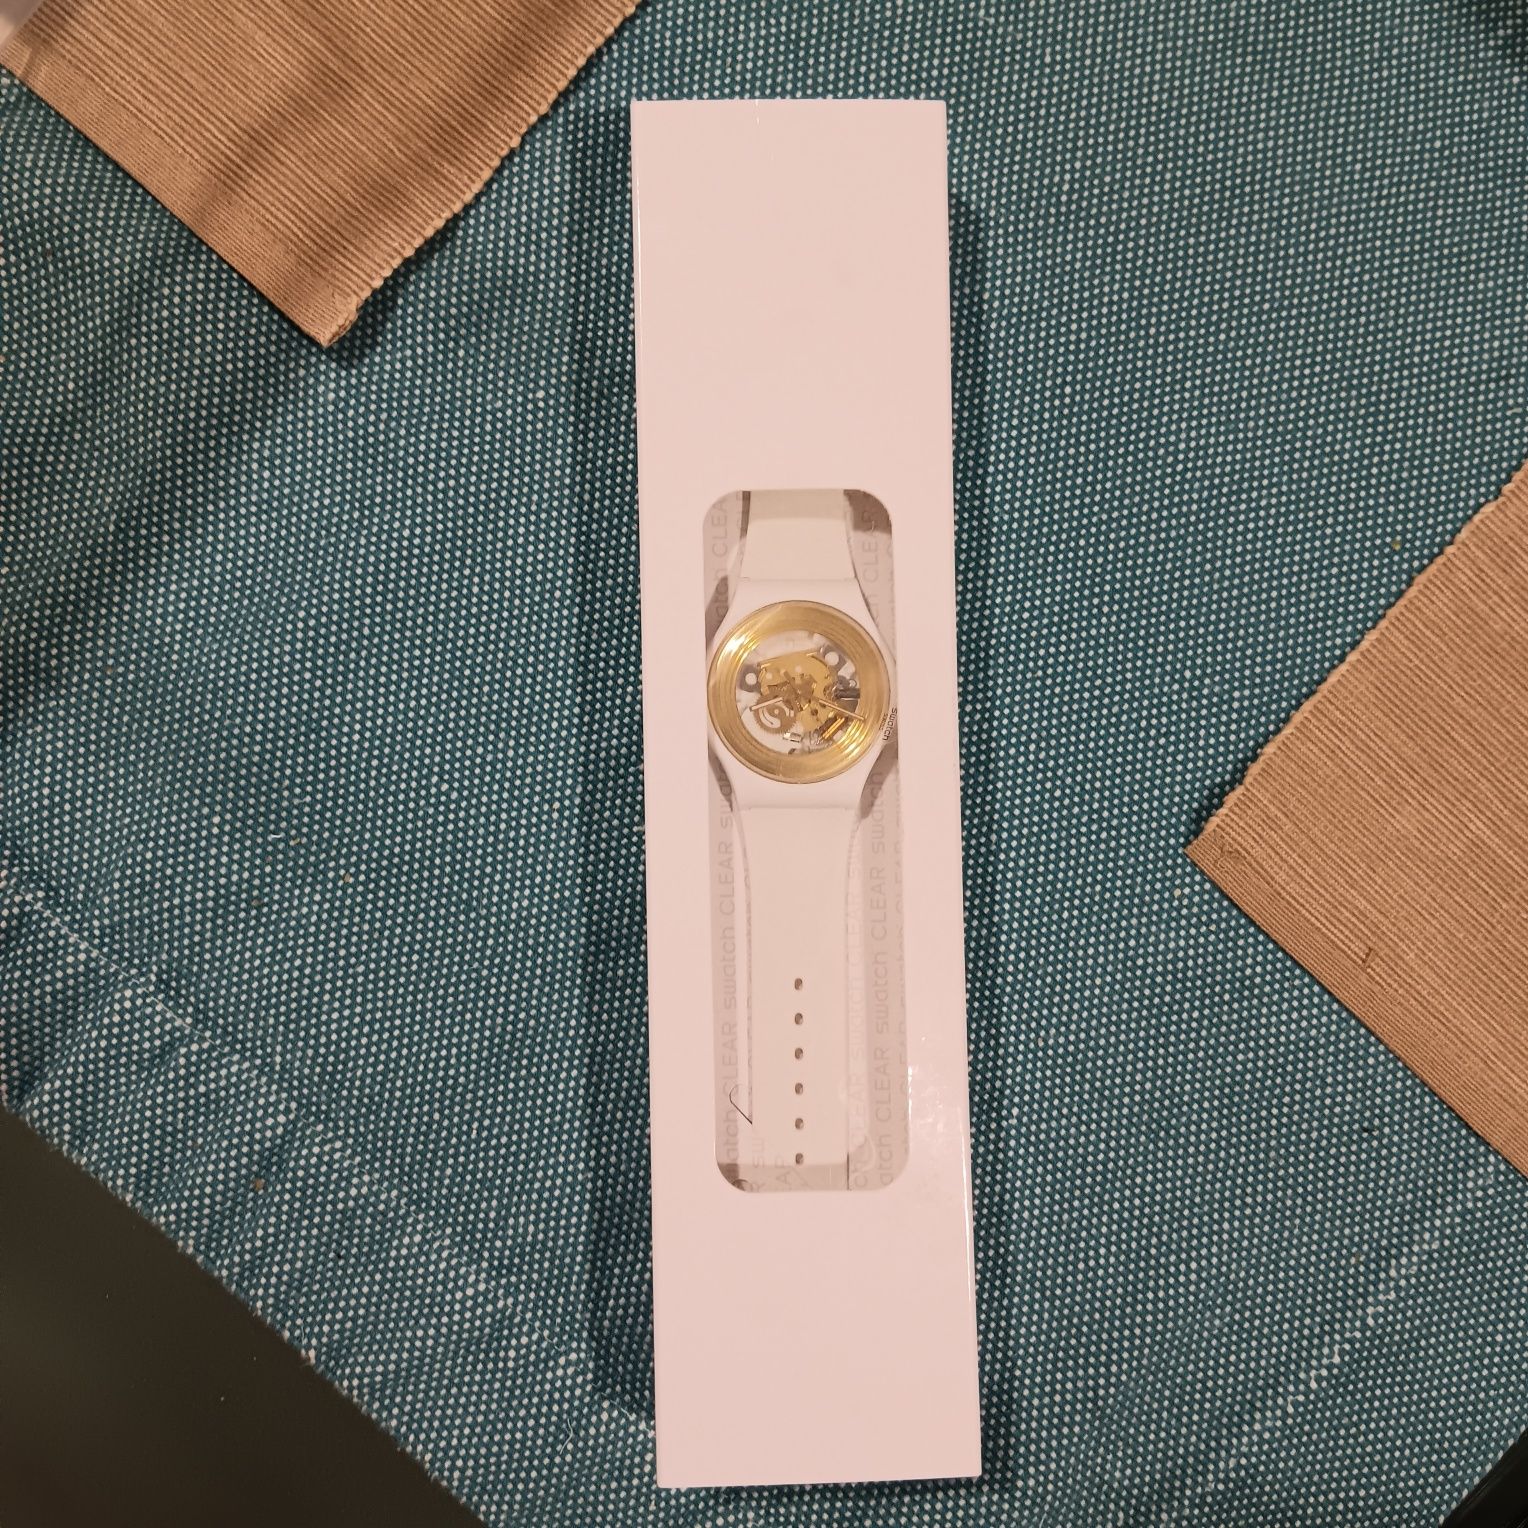 Relógio Swatch dourado e branco